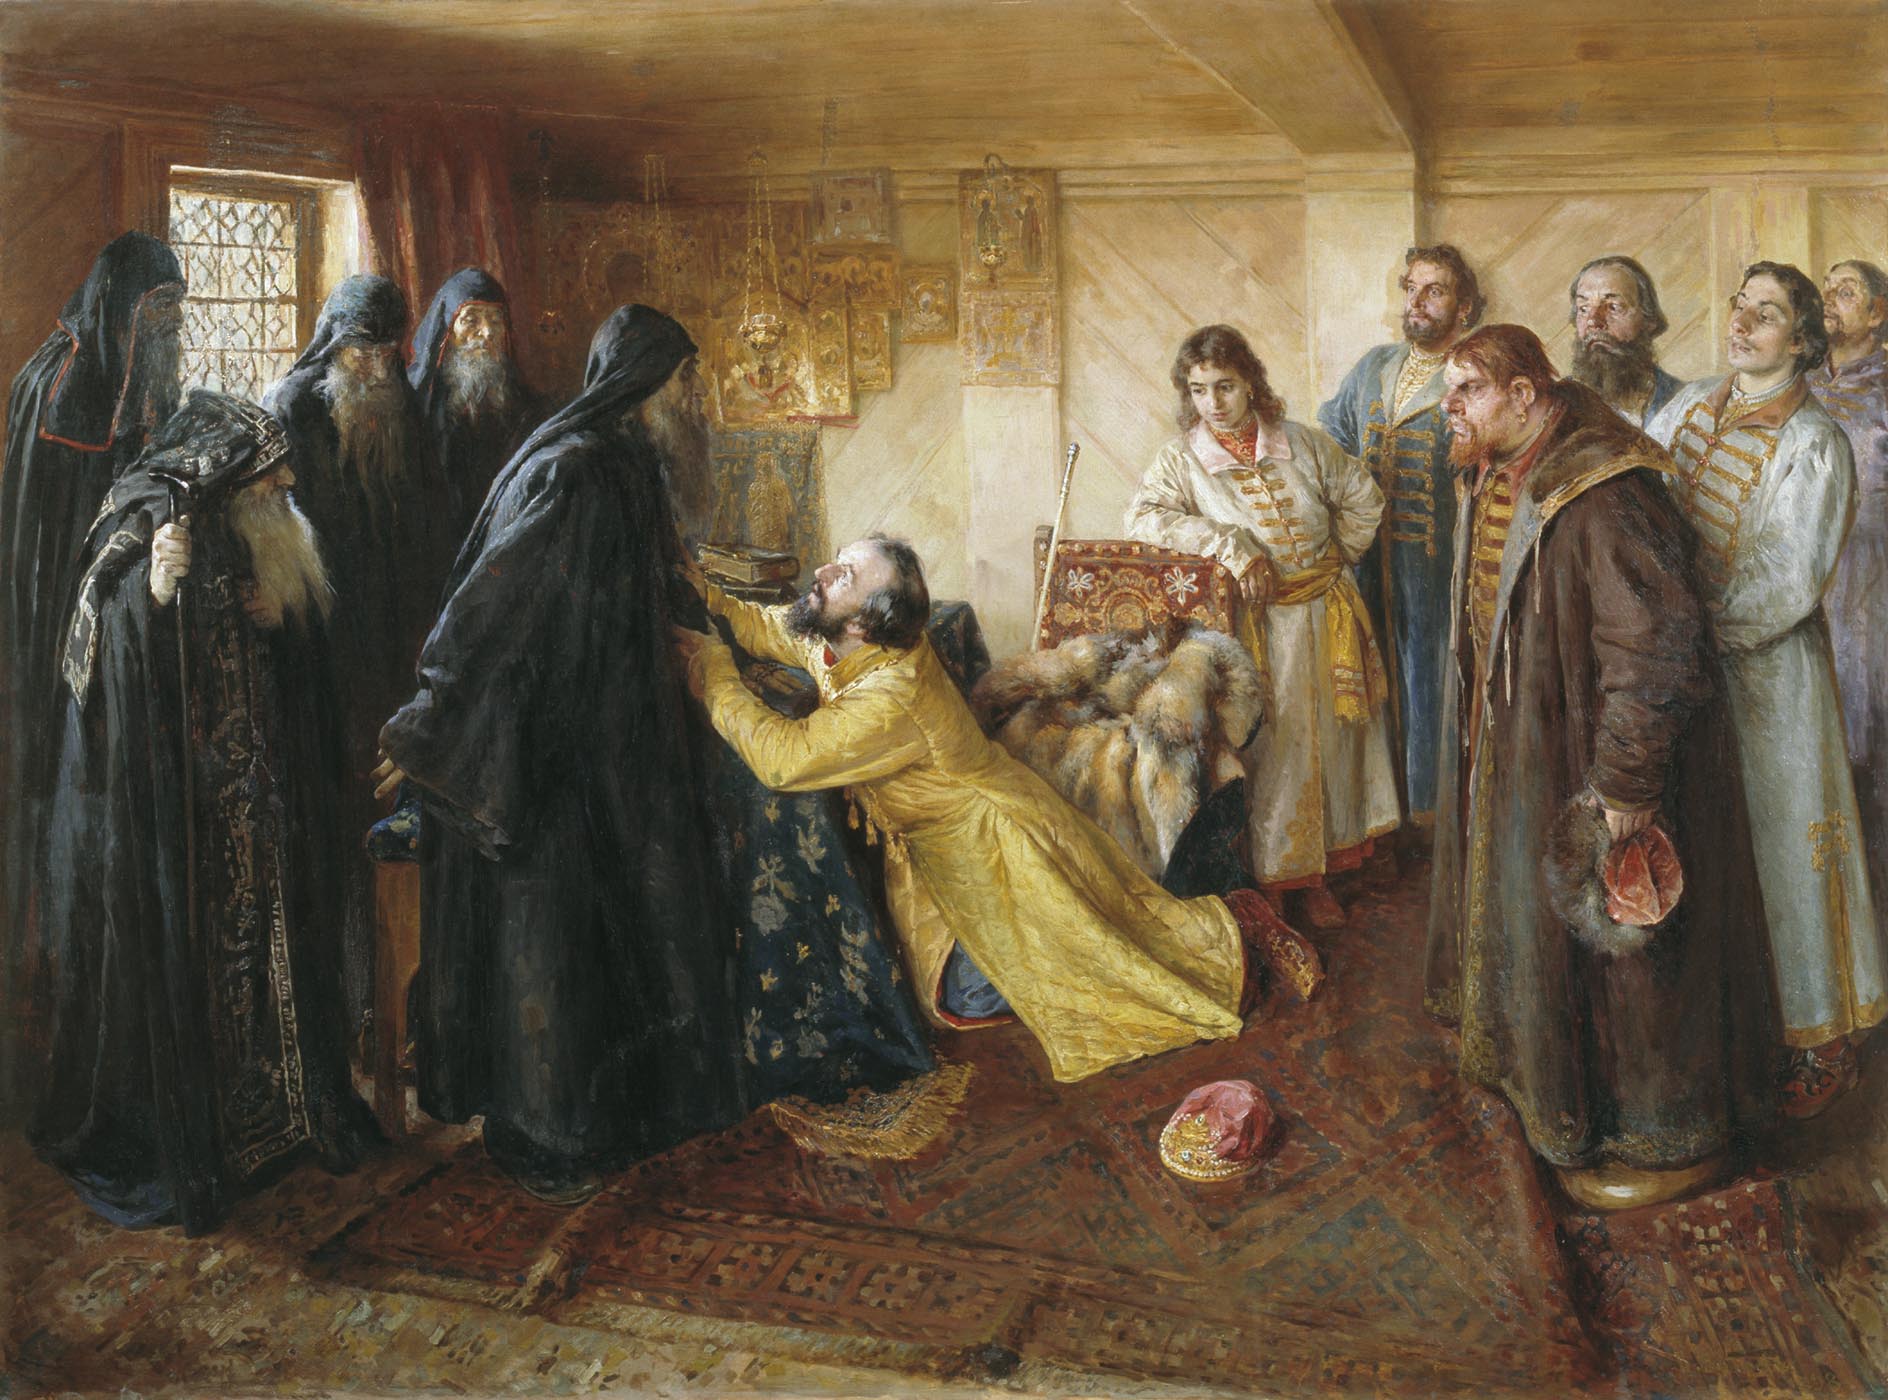 Контрольная работа по теме Исторический портрет Ивана IV Васильевича Грозного 